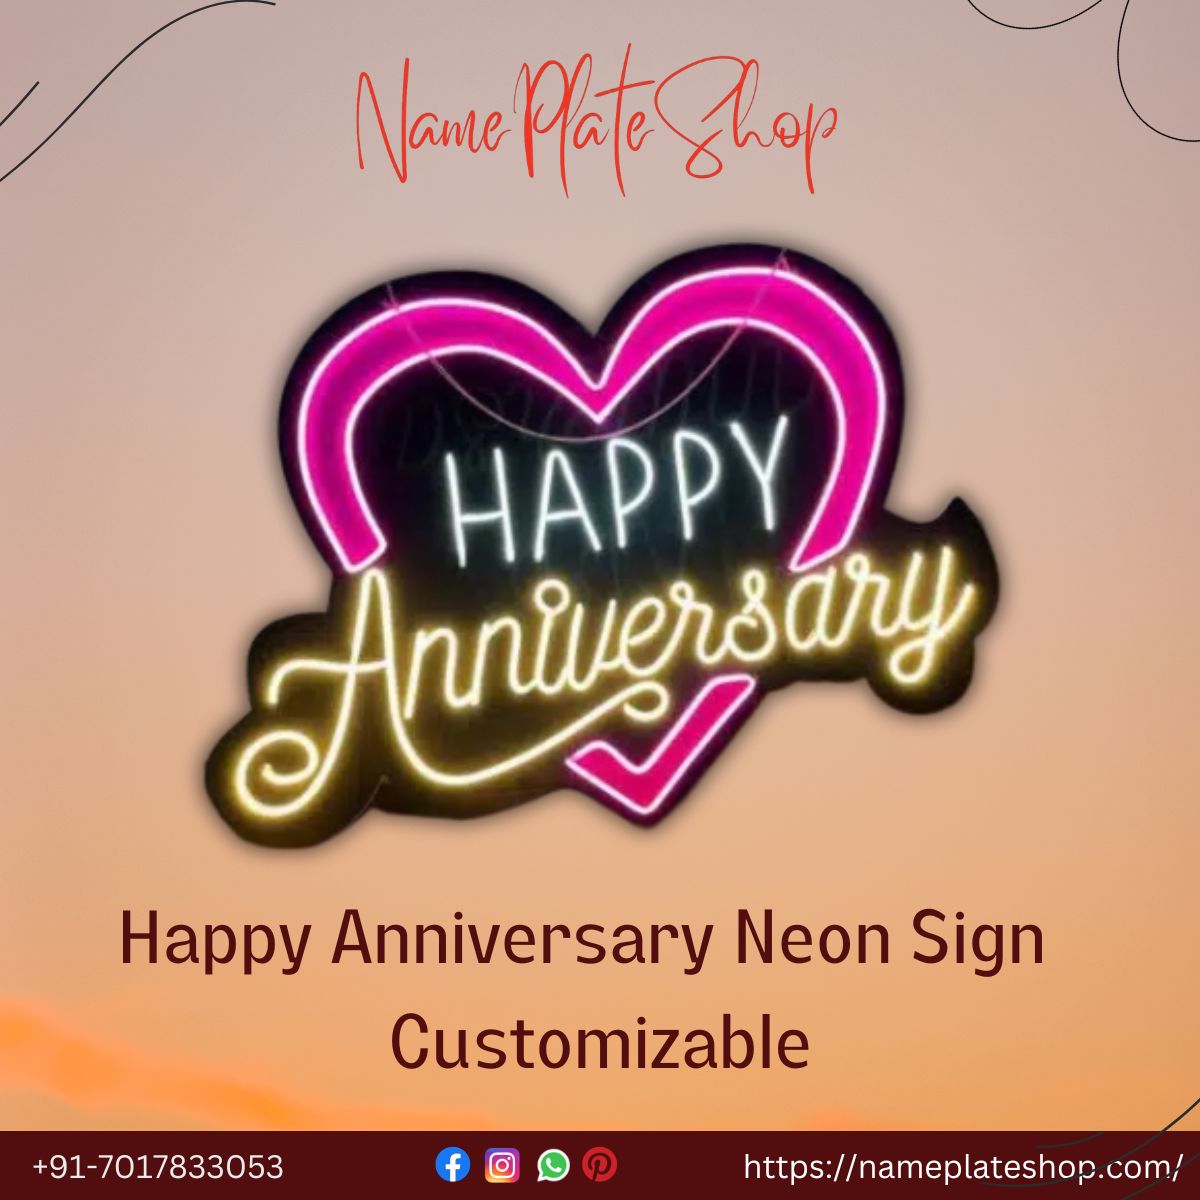 Custom Neon Signs A Unique Anniversary Celebration